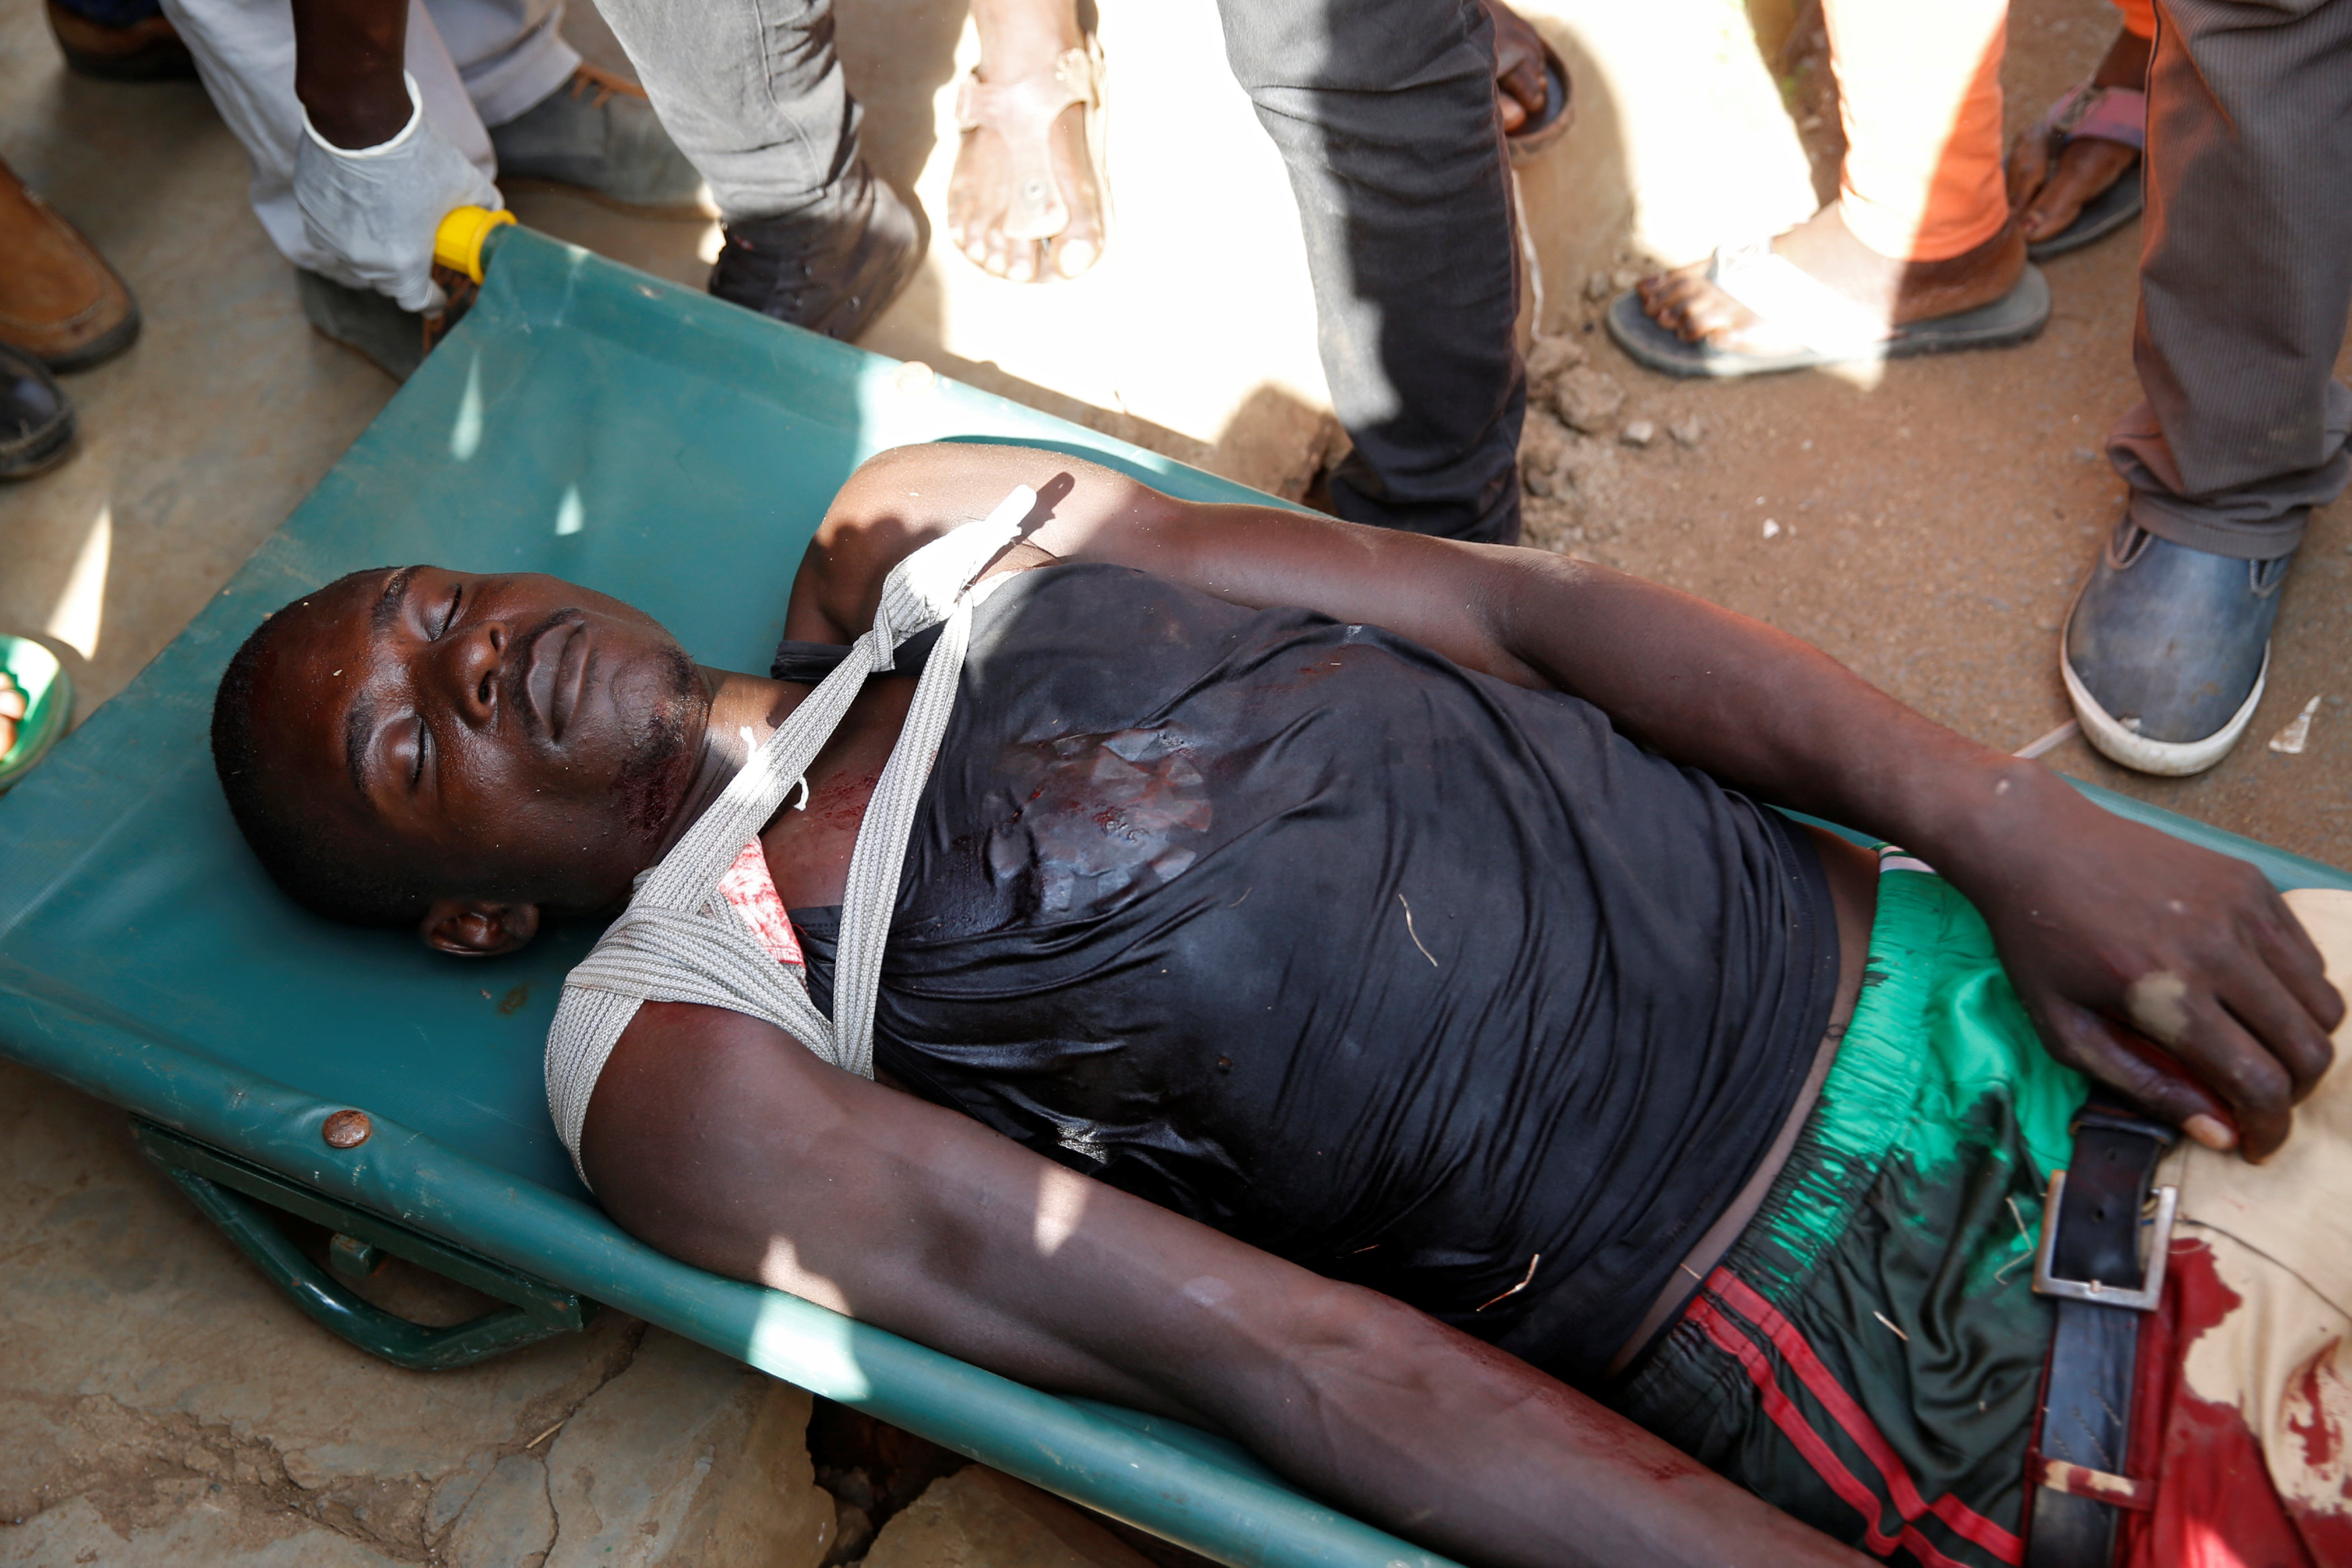 مقتل أحد الأشخاص خلال الاشتباكات بين الشرطة والمعارضة فى كينيا